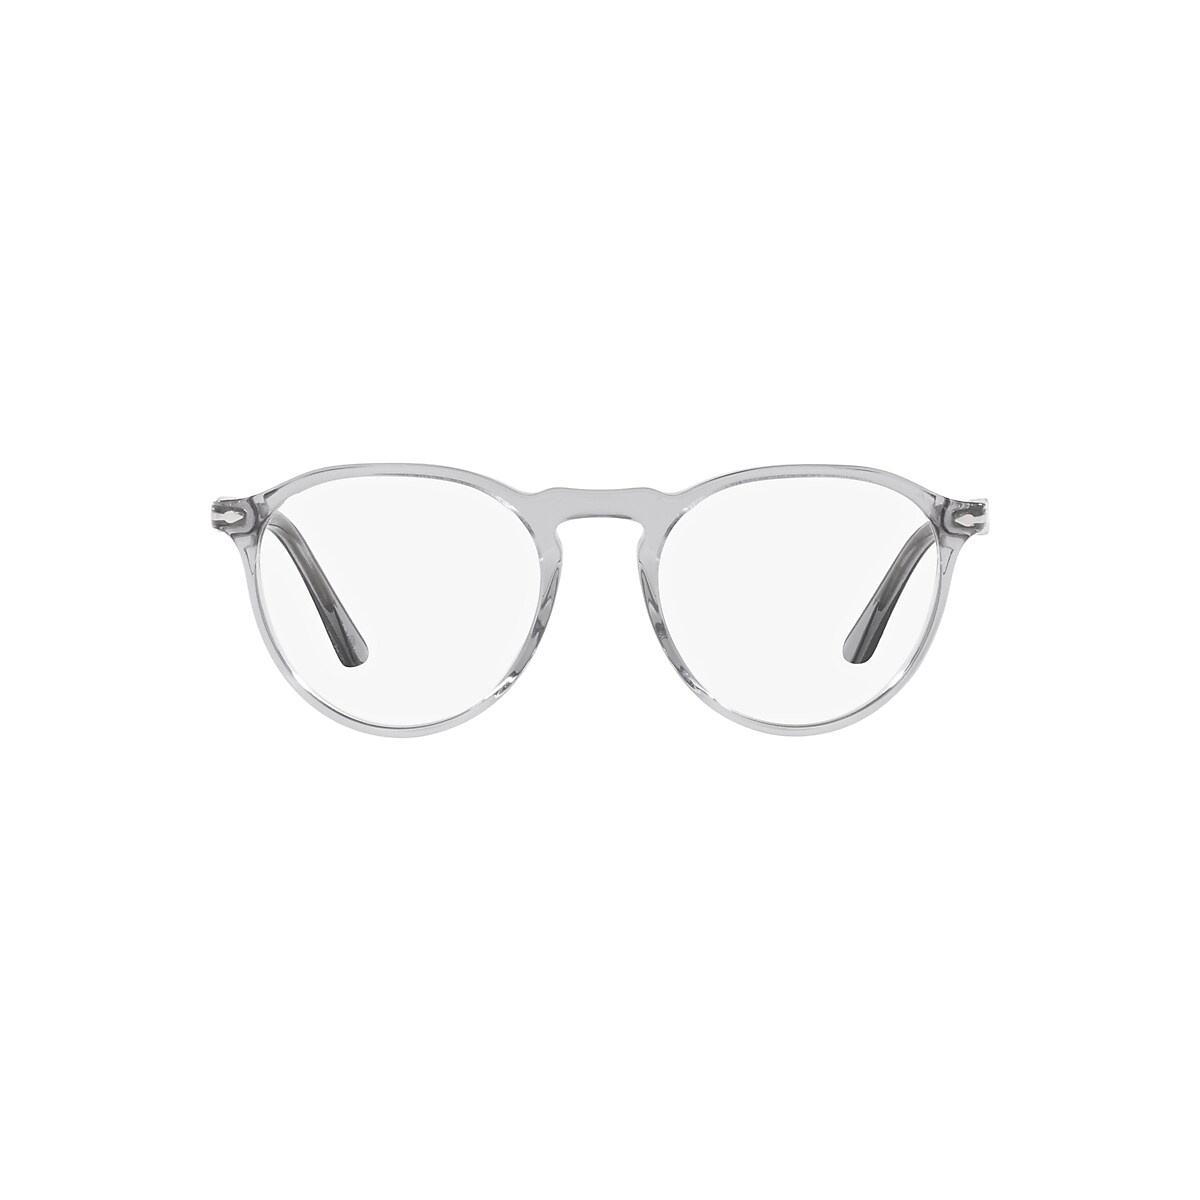 Fancy glasses – Aquazotic